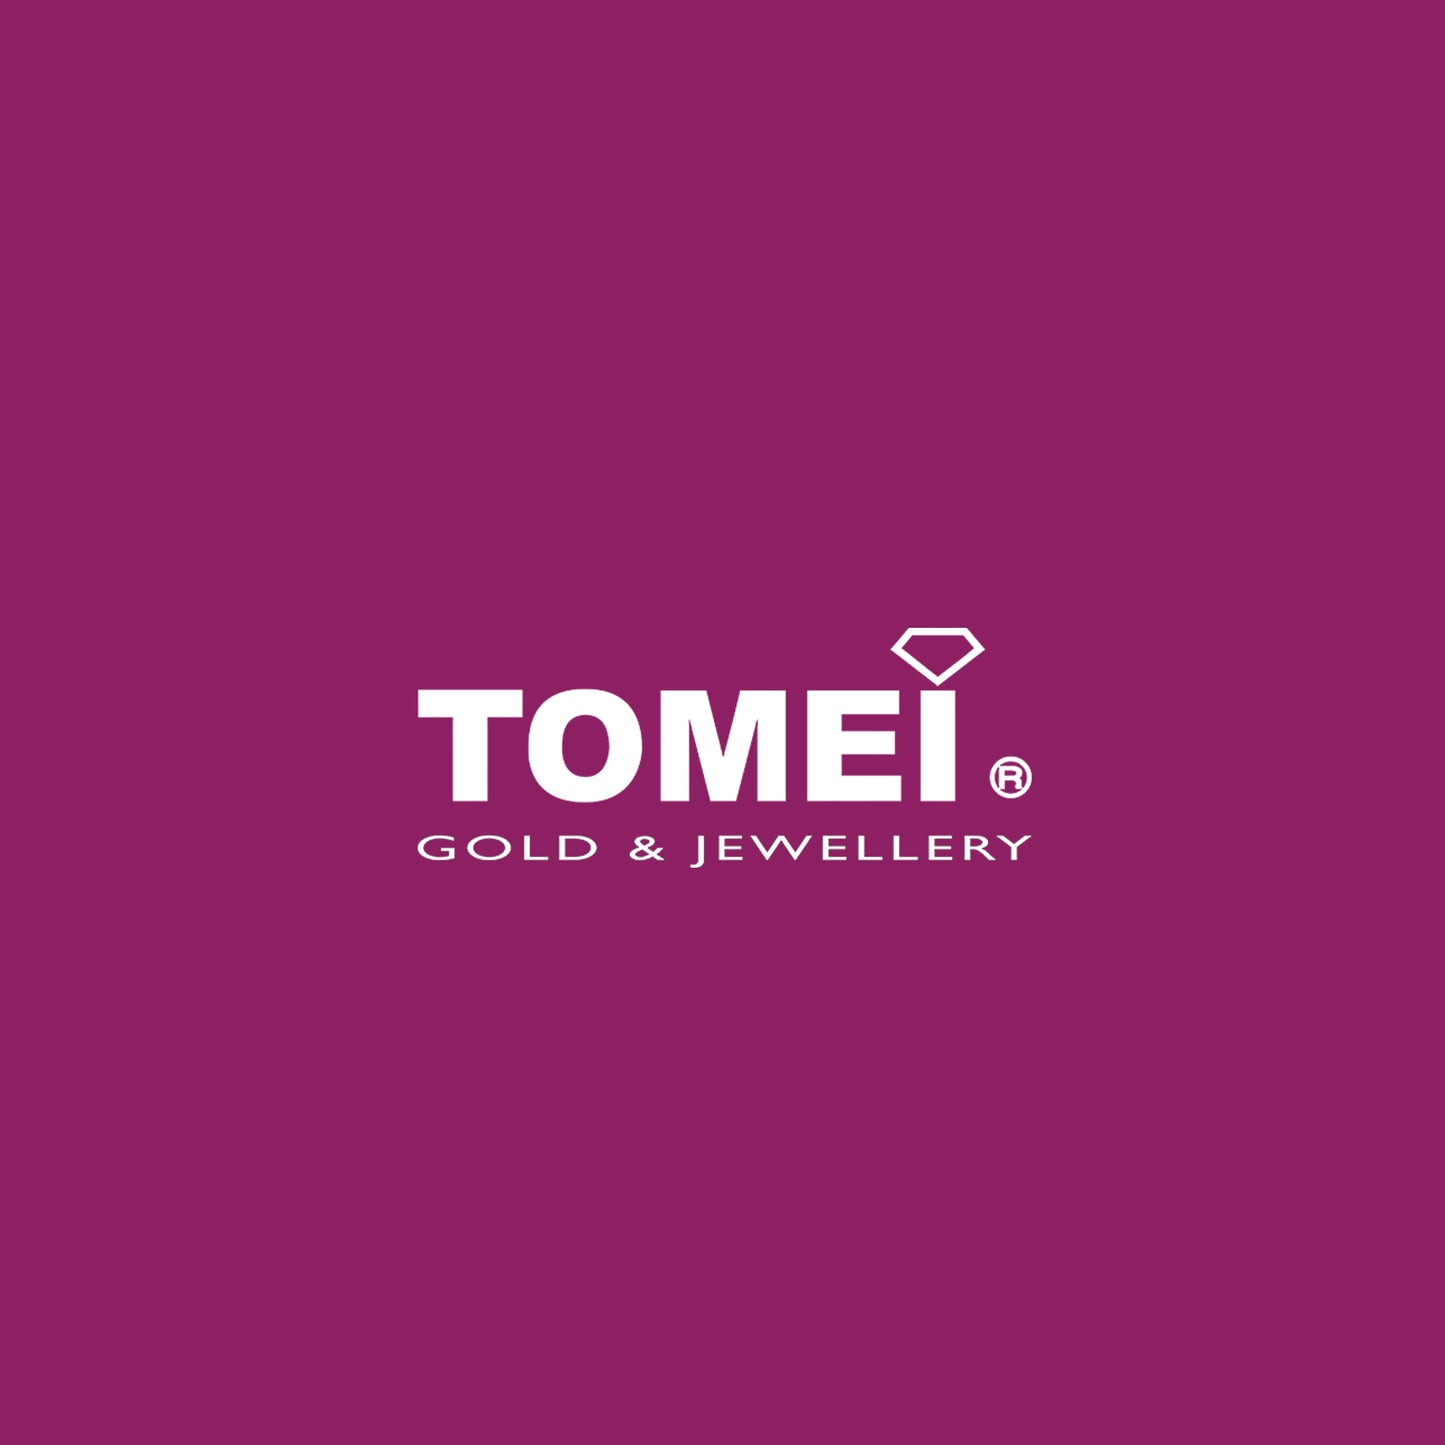 TOMEI Pendant, Diamond White Gold 750 (DP0104607)